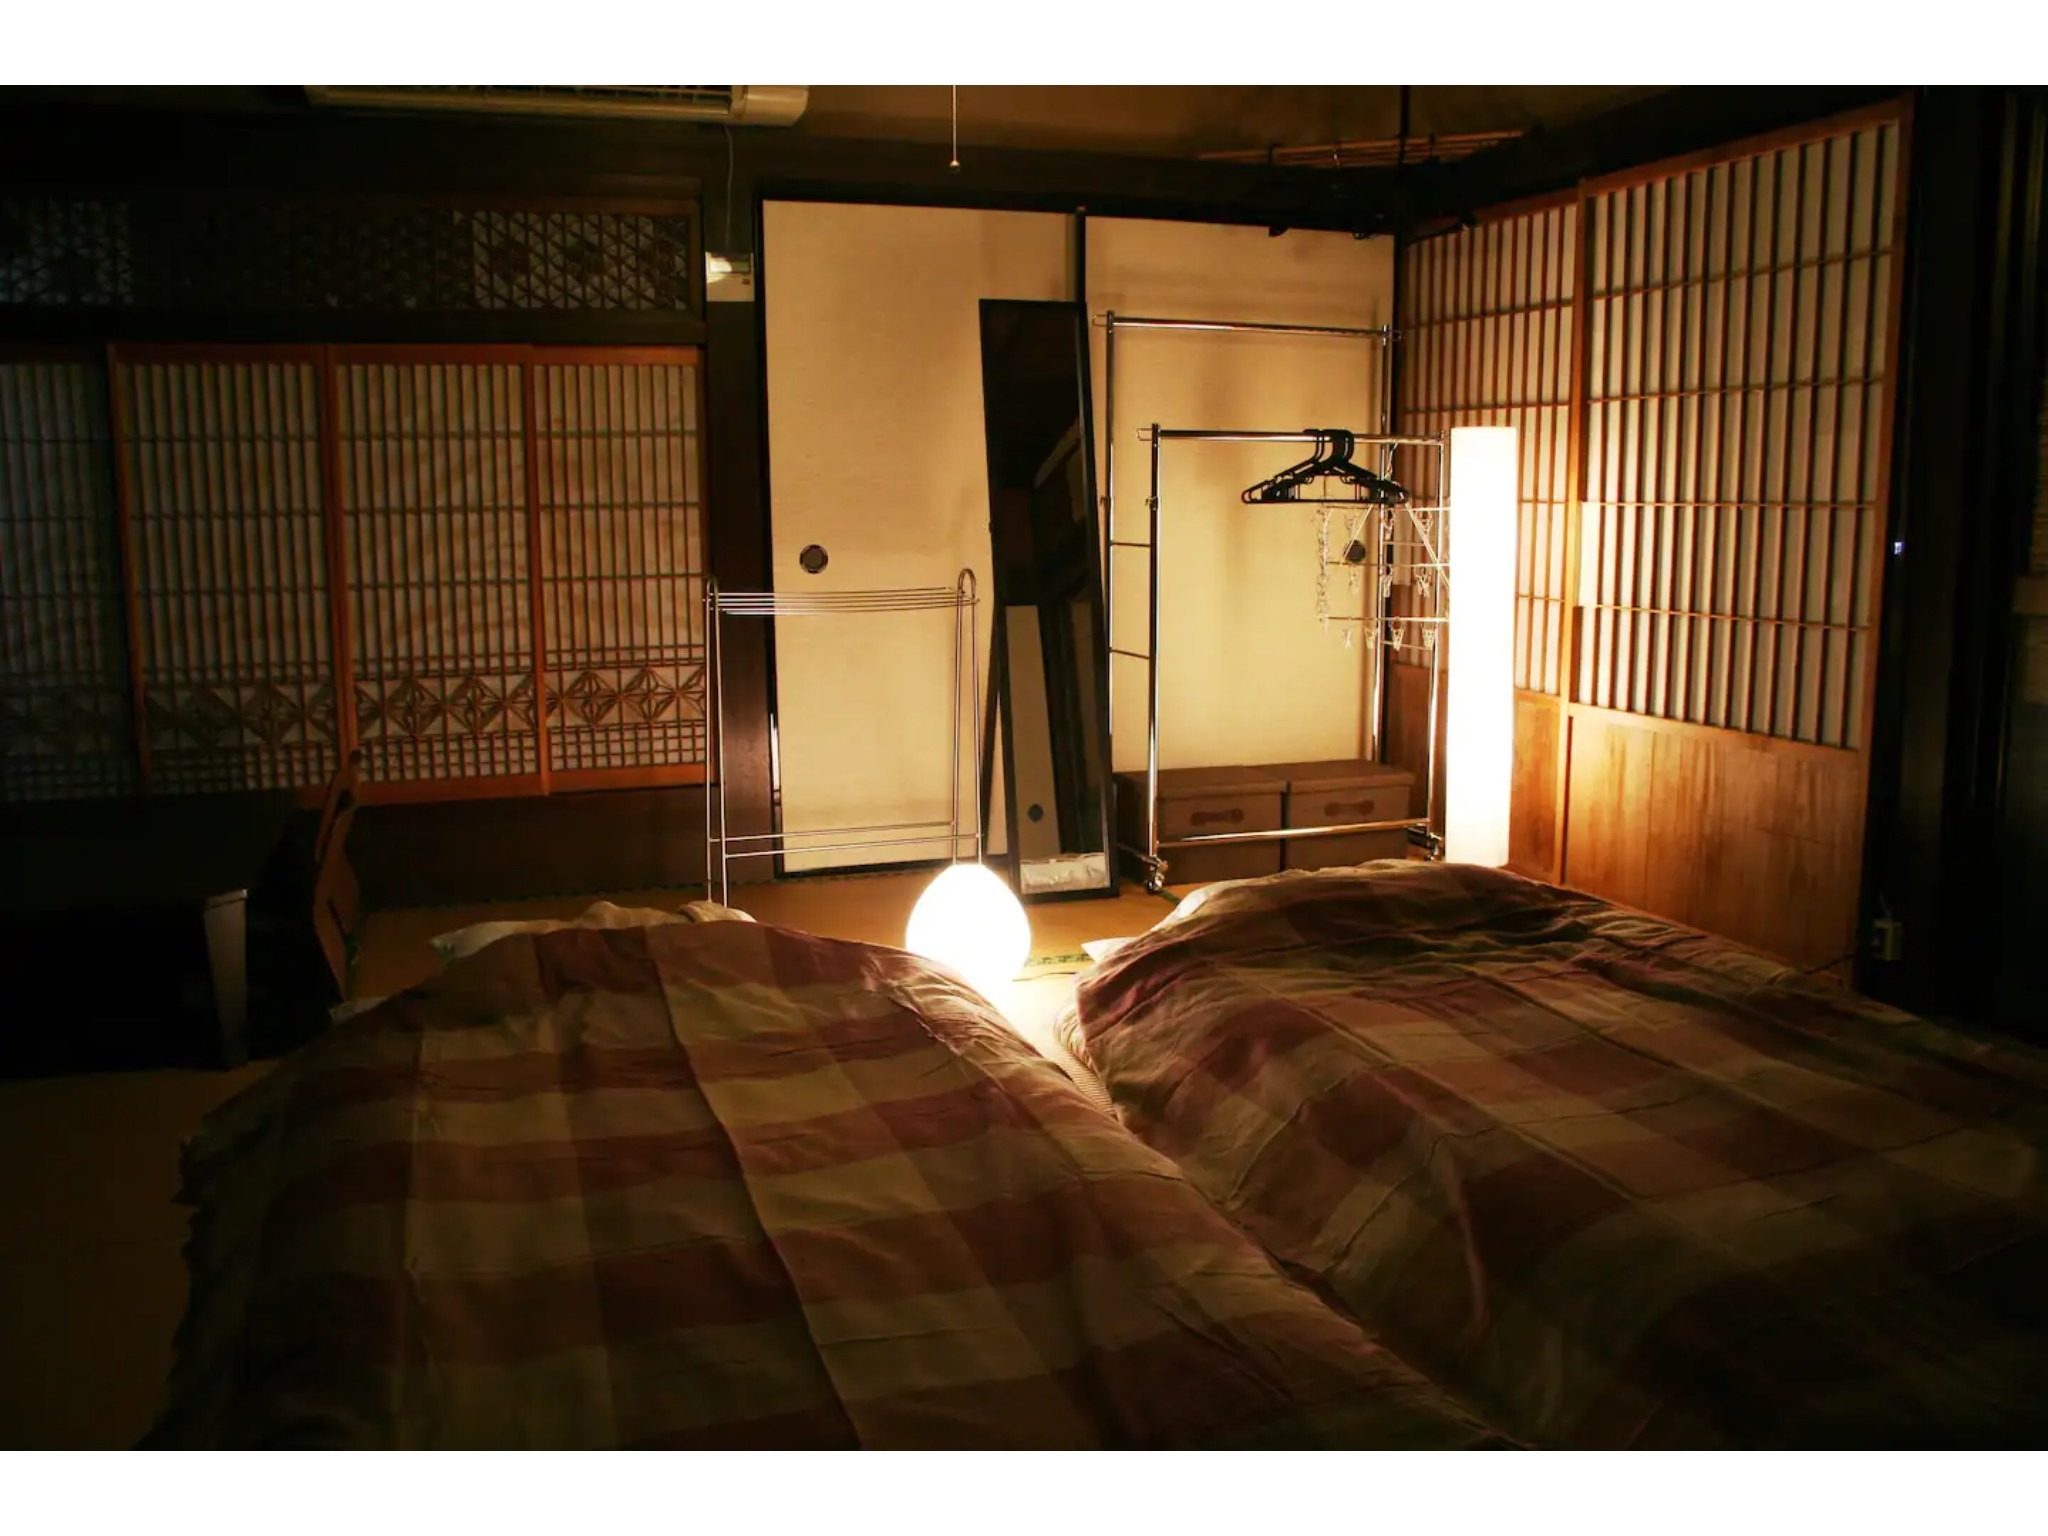 作良家(さらや)の母屋 神山町、築150年の伝統家屋